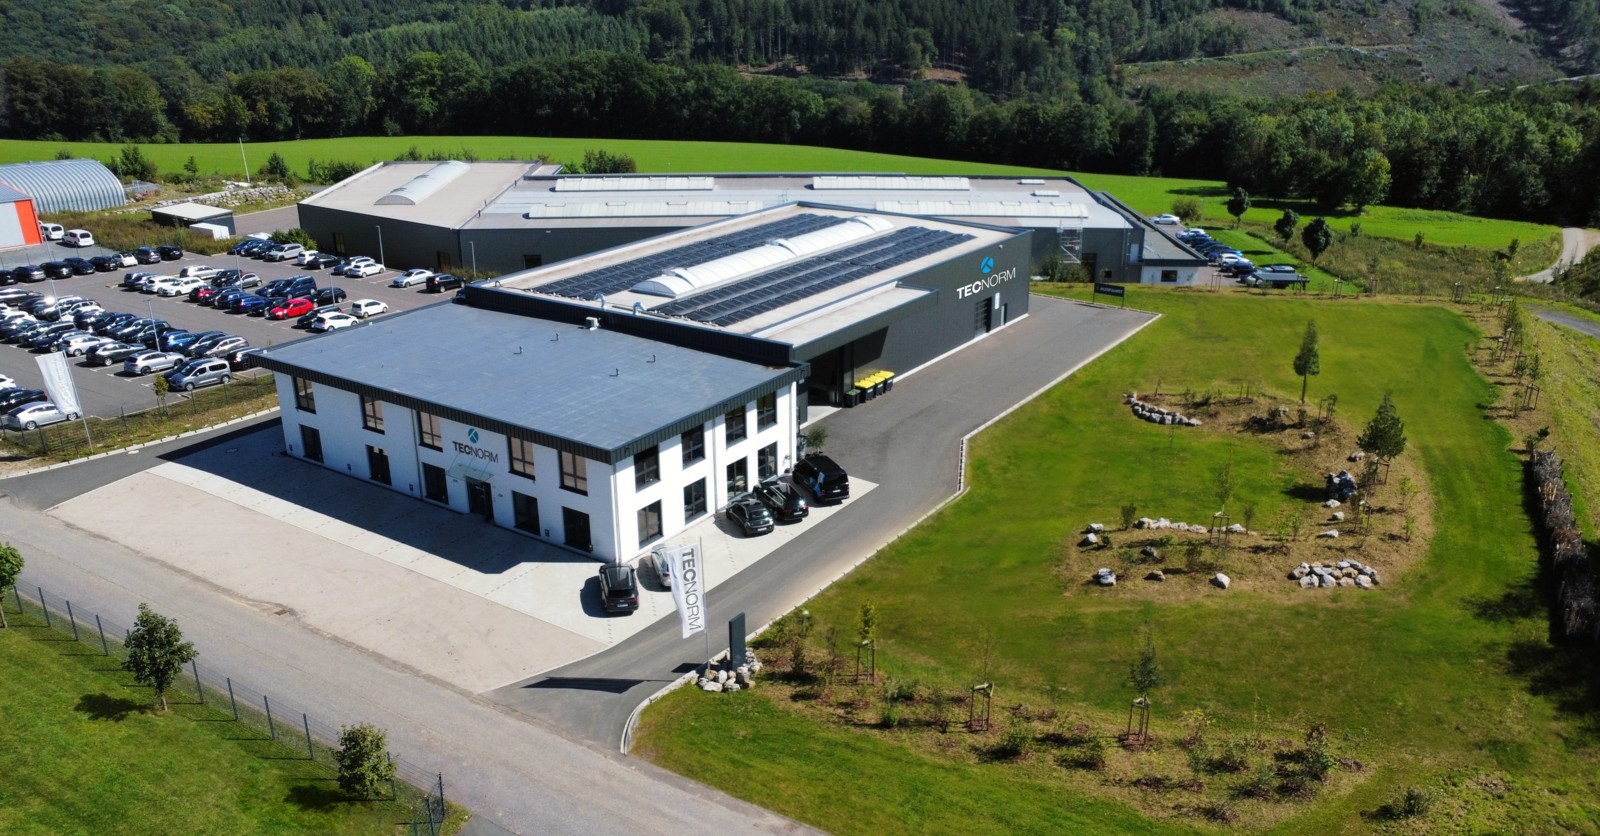 Das neue Betriebsgebäude der Tecnorm – Genügend Raum für umfangreiche Lagerhaltung und effiziente Prozesse sowie ergonomische Arbeitsplätze für das Team – in einer klimafreundlichen Hülle mit großem Garten zum CO